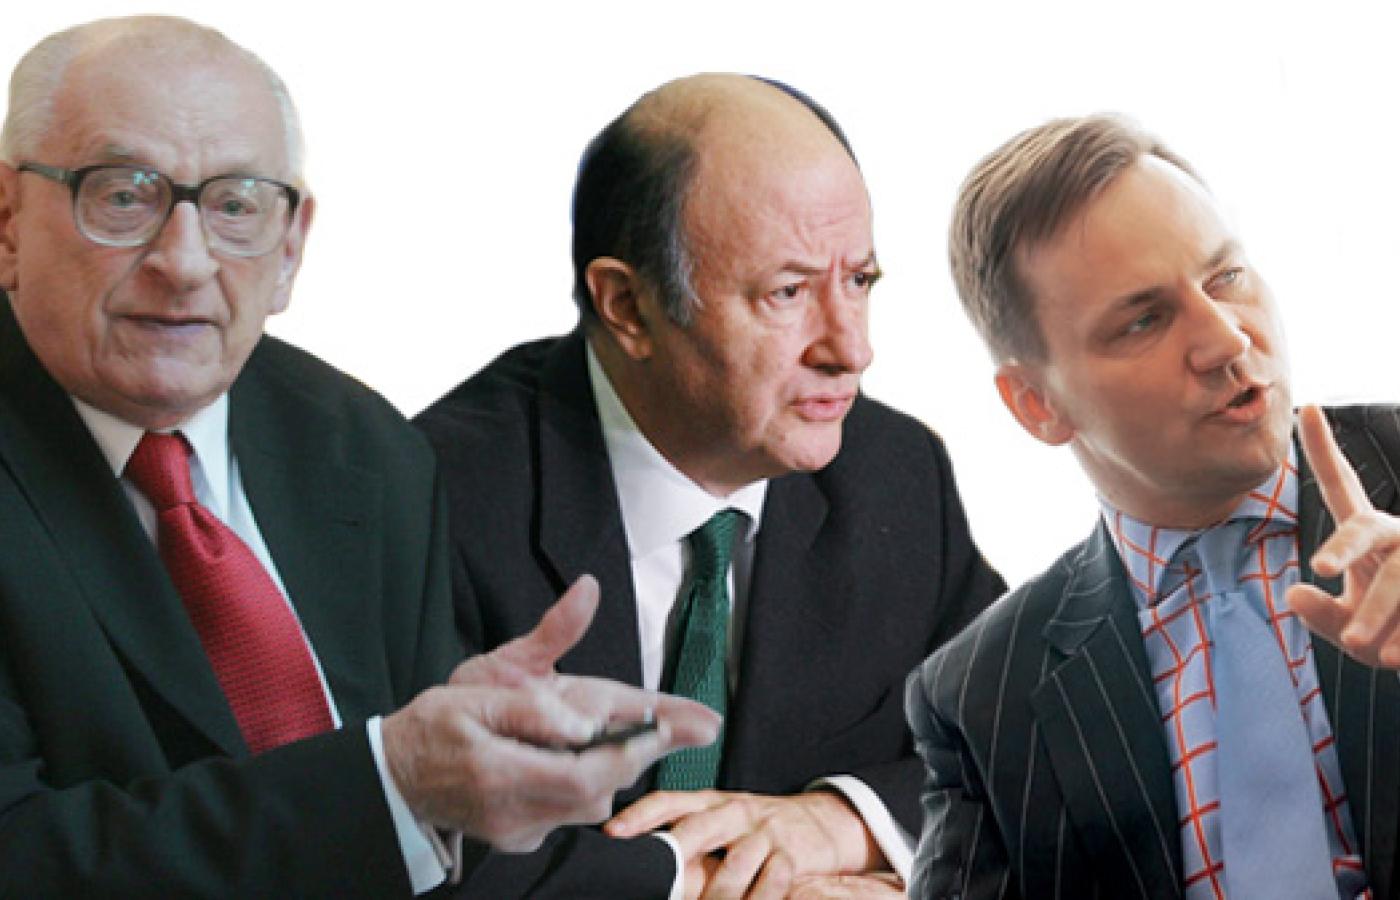 Od lewej: W. Bartoszewski (fot. W. Olkuśnik/Agencja Gazeta), J. Rostowski (fot.J.Łagowski /Agencja Gazeta), R. Sikorski (fot. Leszek Zych)